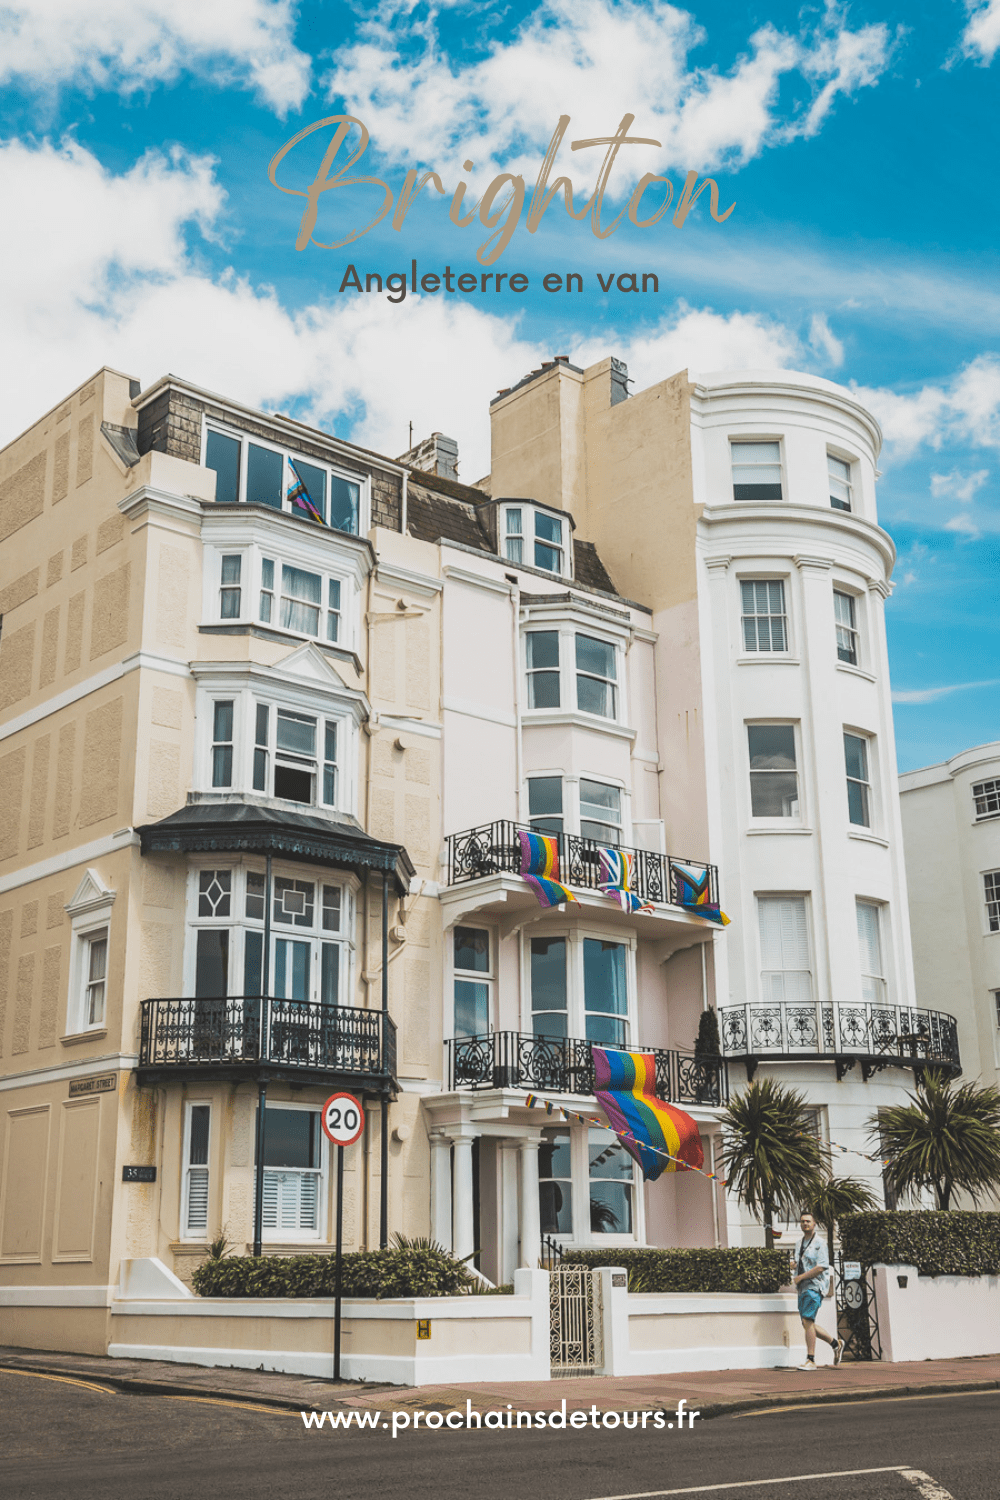 Découvrez Brighton, une destination emblématique de l'Angleterre. Entre ses plages de galets pittoresques, ses ruelles animées et ses sites historiques, Brighton est une destination parfaite pour un city trip en Europe. Que vous soyez amateur de culture, passionné d'histoire ou simplement en quête de détente lors de vacances à la mer, Brighton saura vous séduire. Réservez dès maintenant votre escapade à Brighton et plongez dans l'atmosphère unique de cette ville balnéaire dynamique.